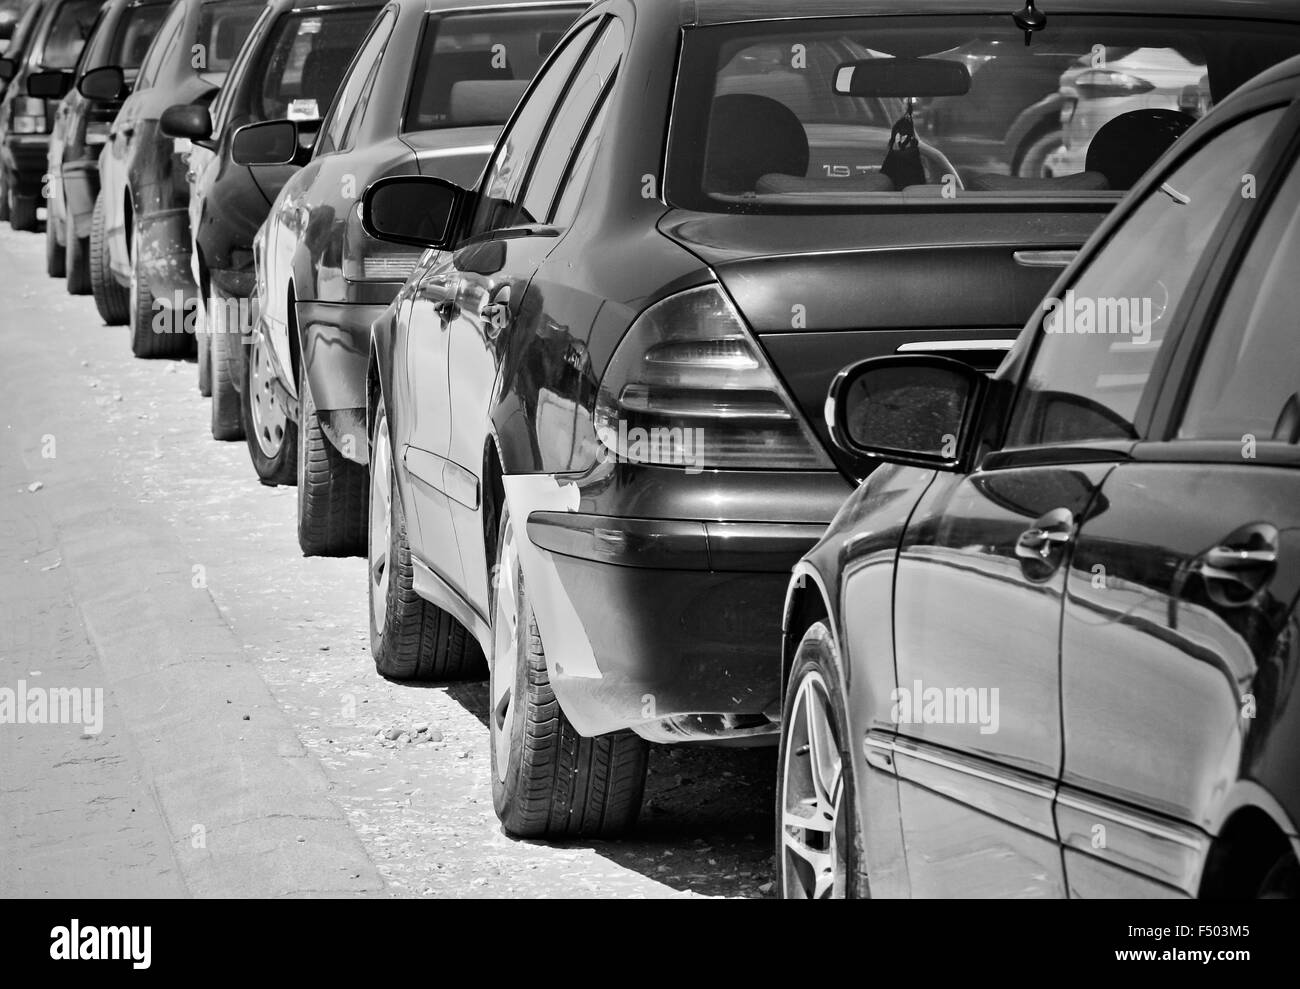 Engen Parkplatz mit vielen Autos in schwarzen und weißen Farben Stockfoto